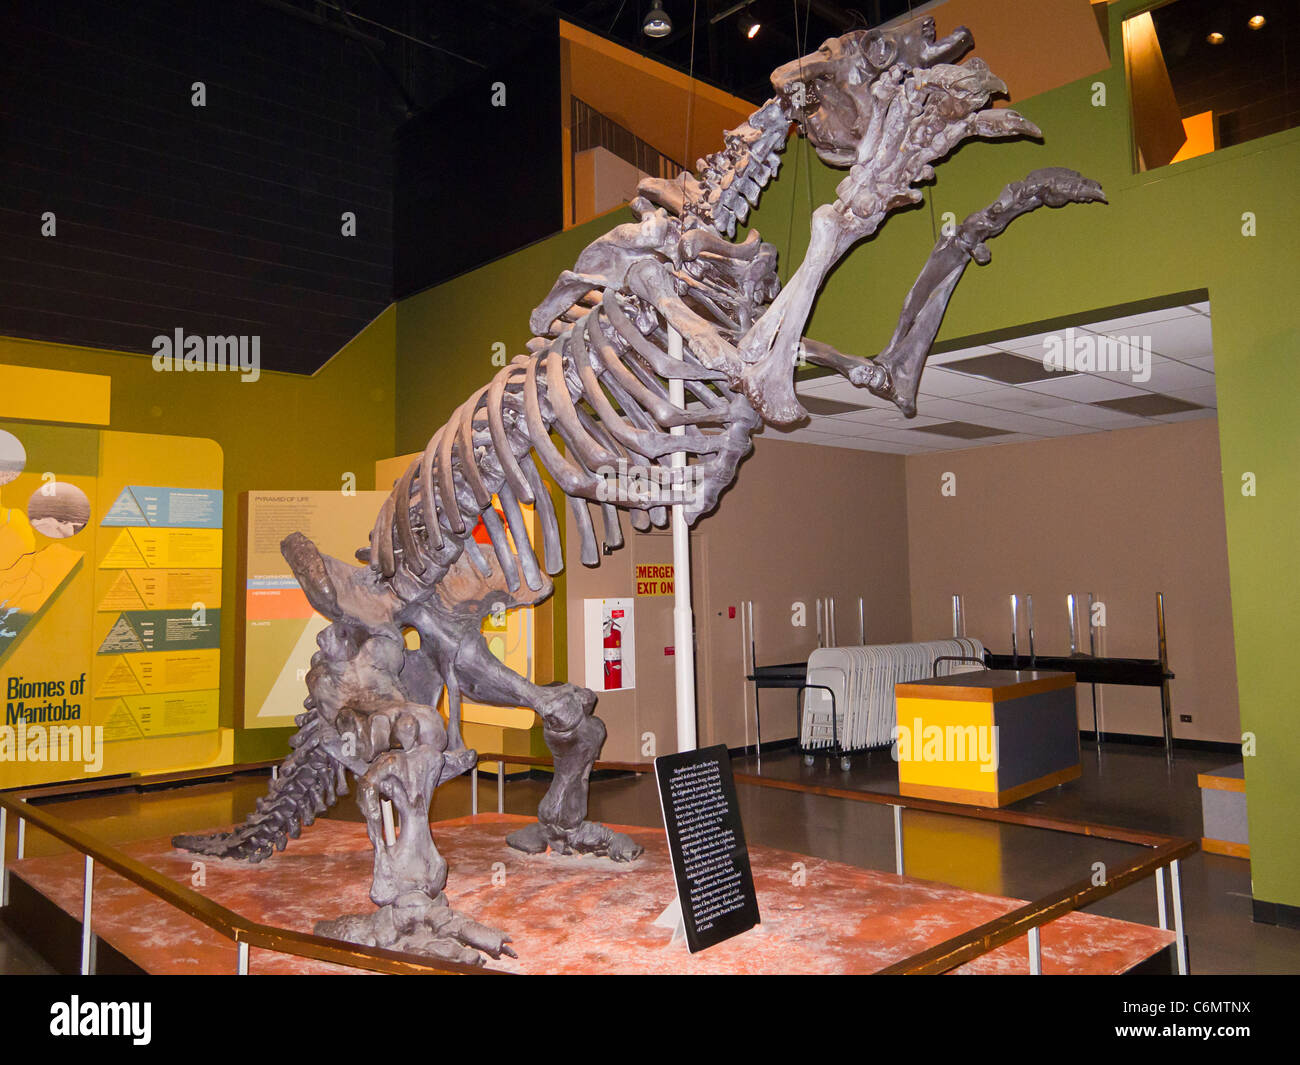 Esqueleto de un megatherium, un gigante Ground Sloth que vivió hace 5 millones de años.En exhibición en el museo de Manitoba en Winnipeg, MB Foto de stock